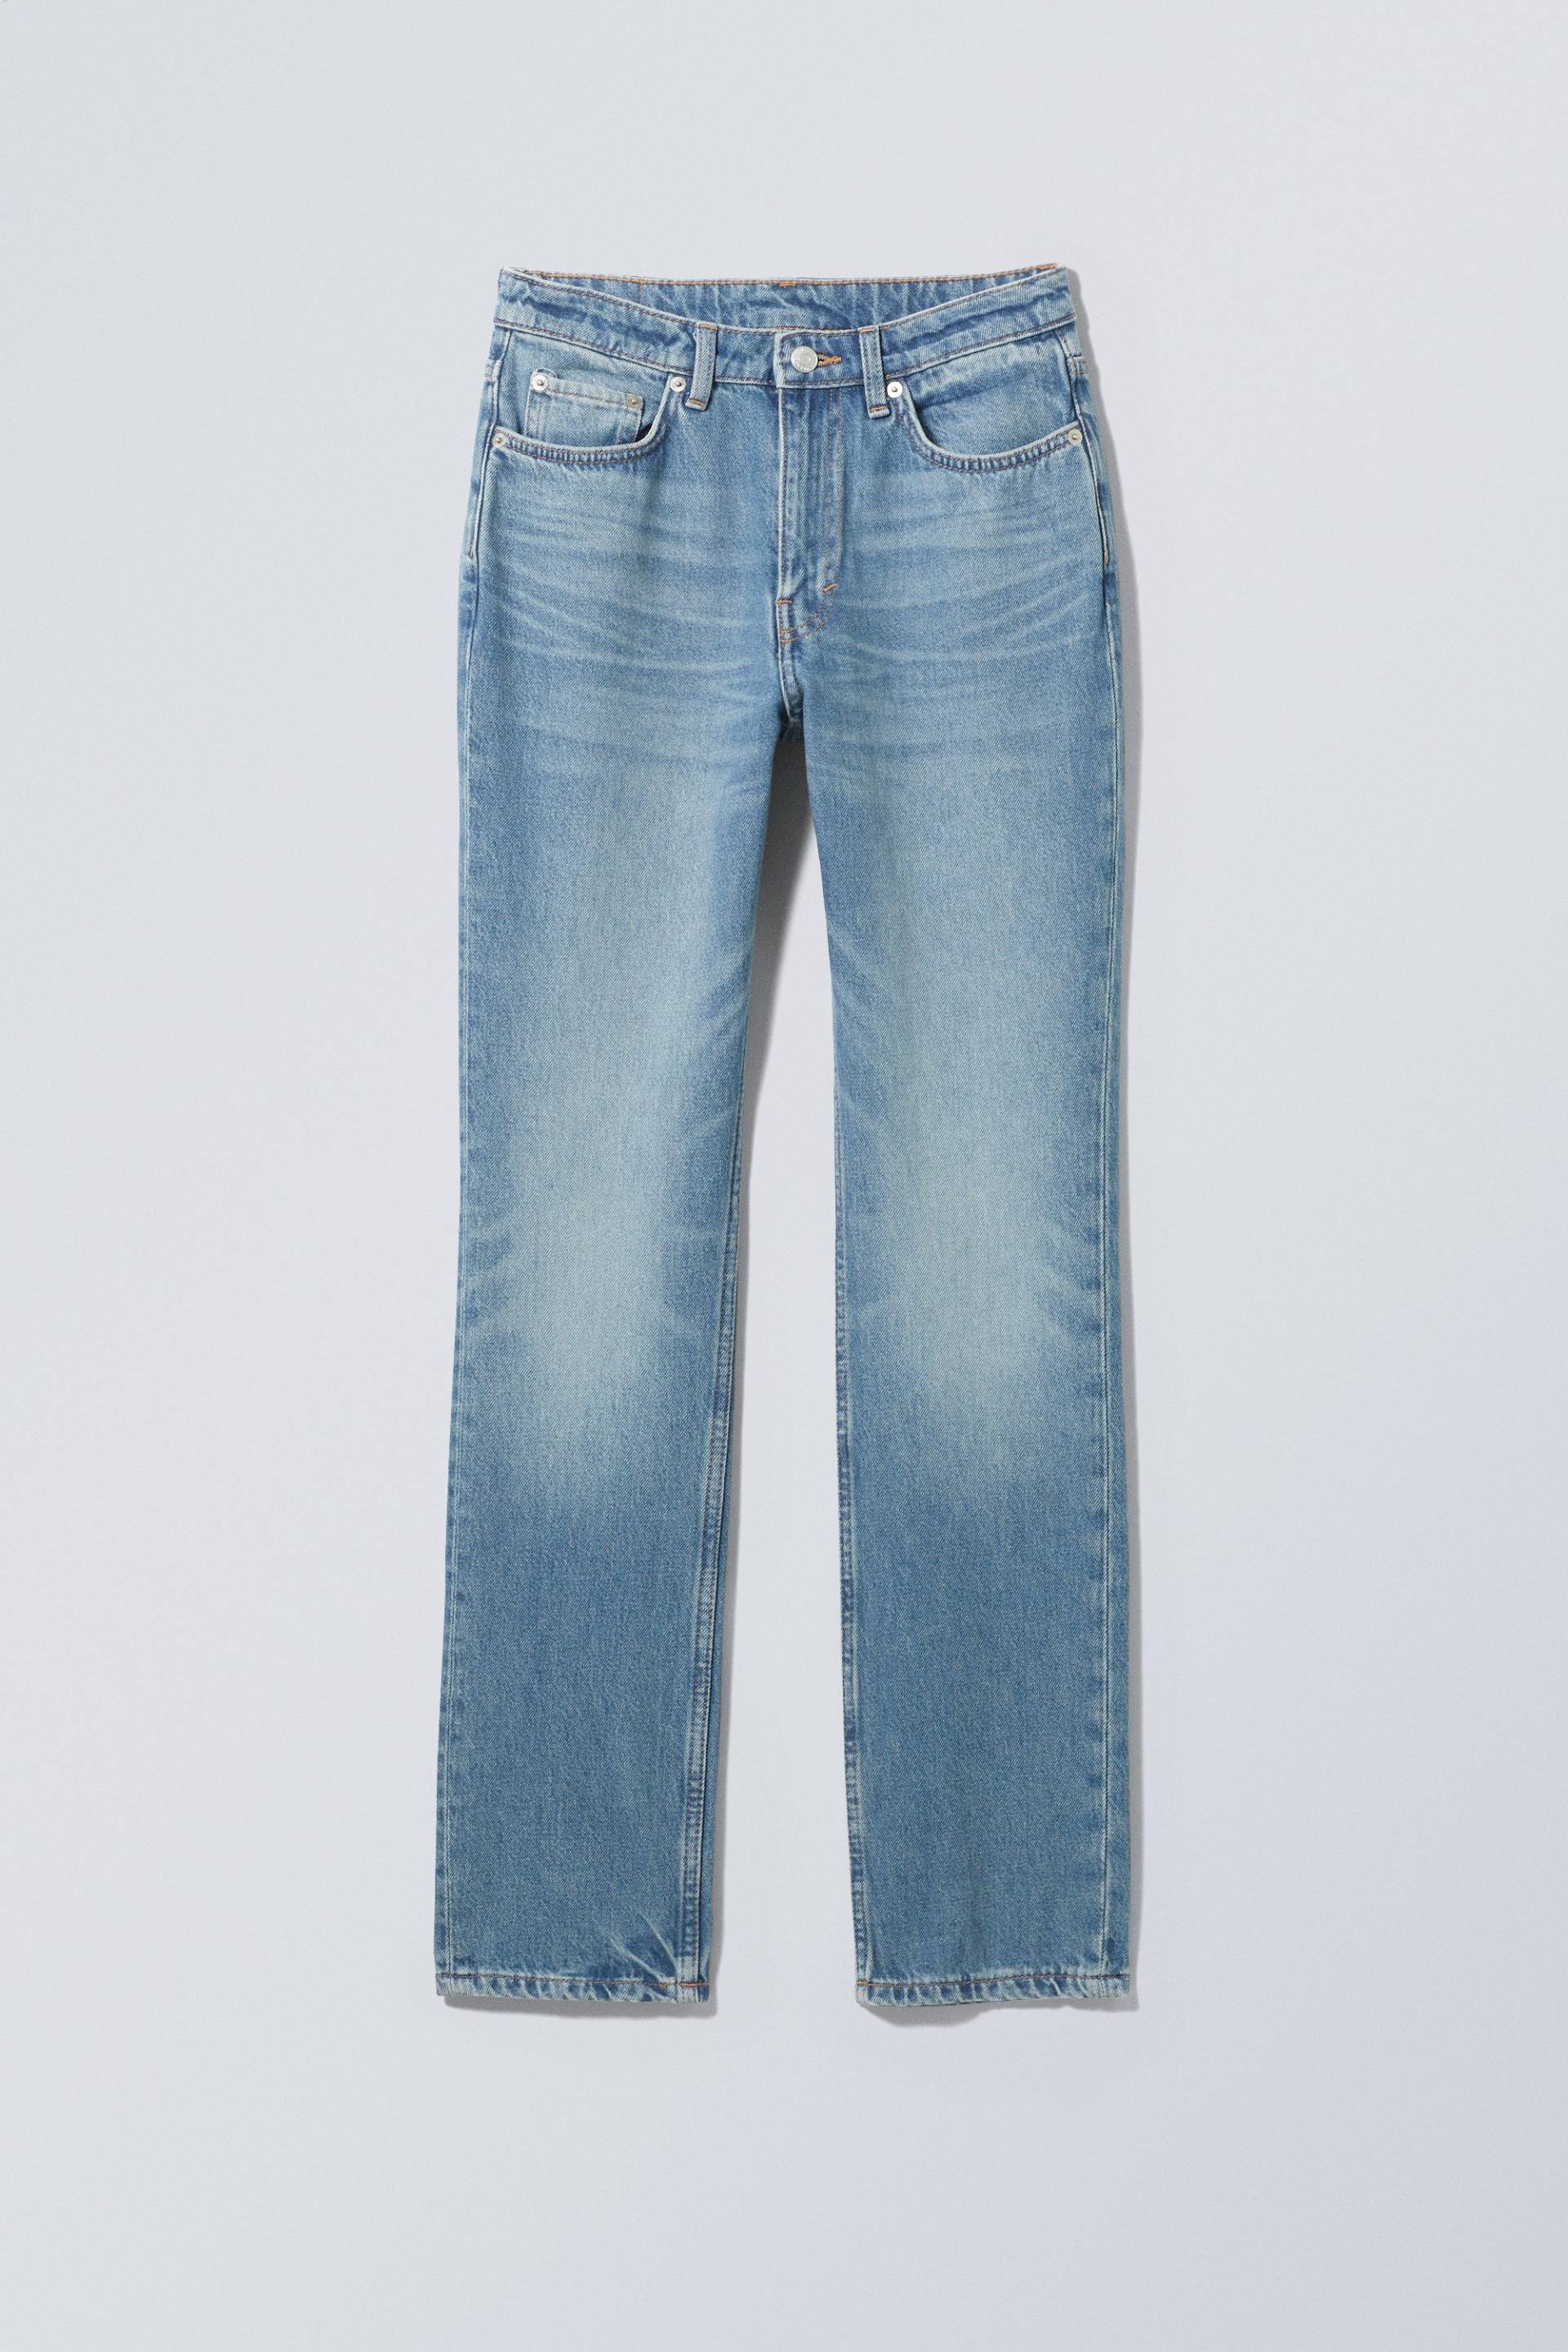 Weekday Schmale Jeans City mit hohem Bund Seventeen-Blau, Skinny in Größe 27/32. Farbe: Seventeen blue von Weekday